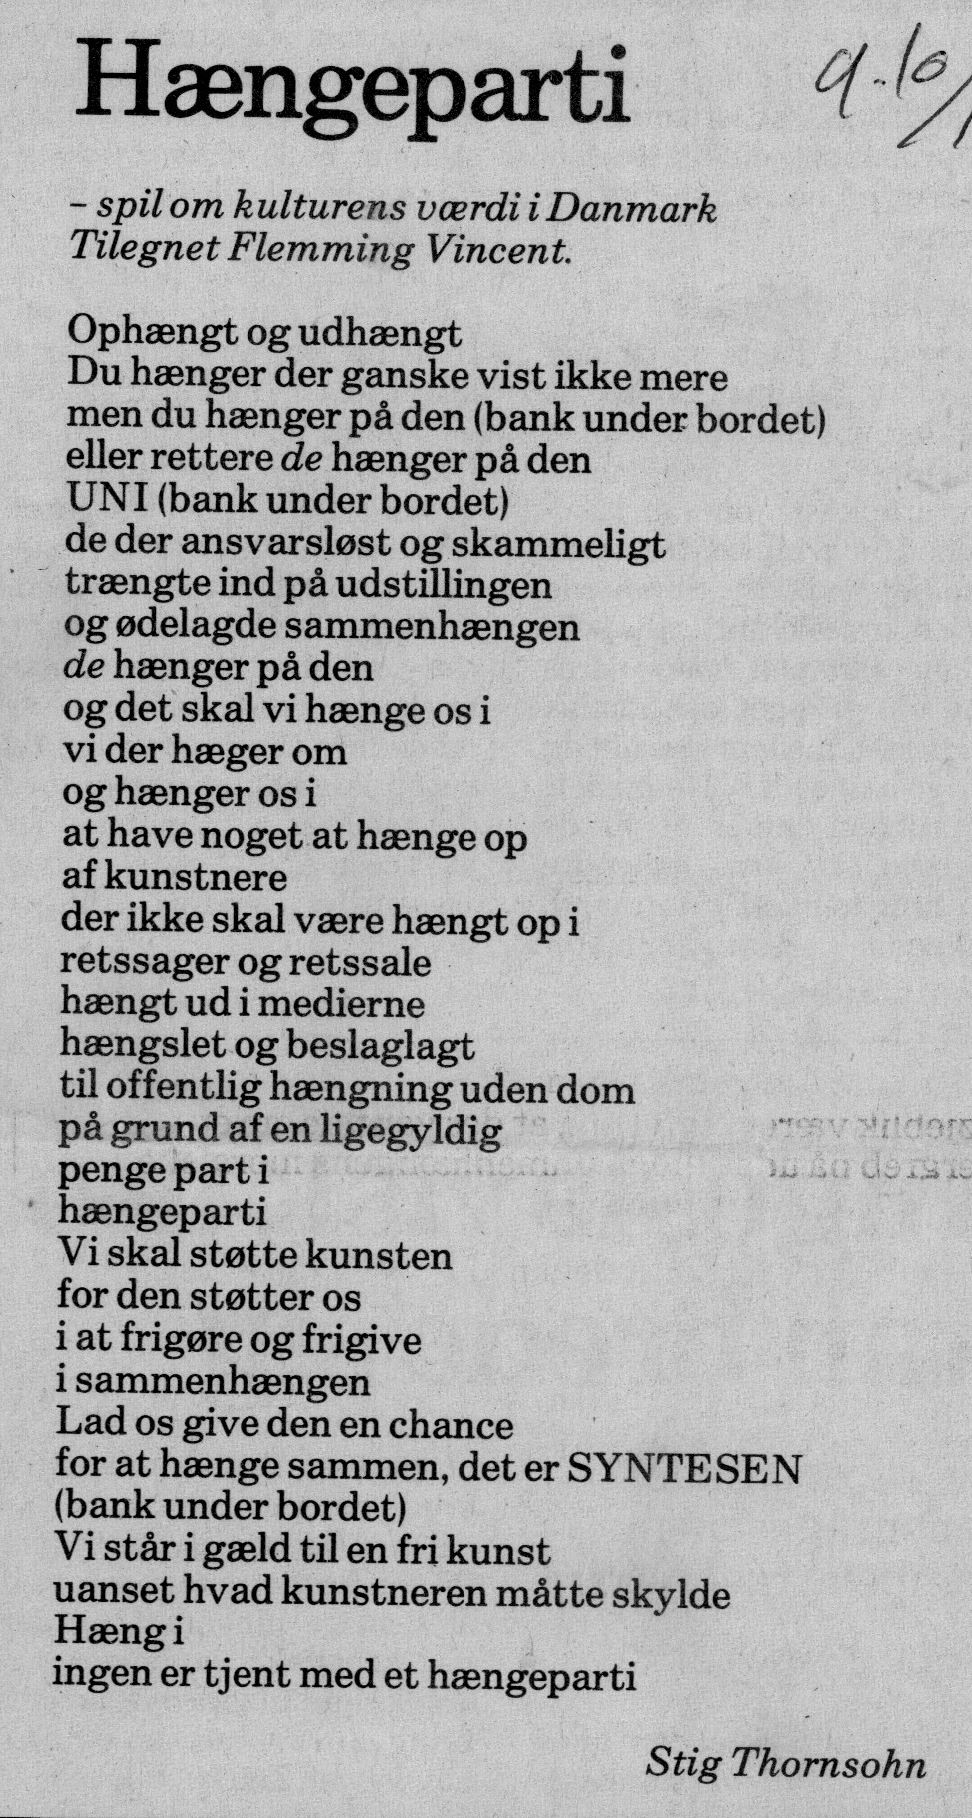 Hængeparti. Omtale-digt (Retssag. Den lange rejse, Charlottenborg, København 1989). Stig Thornsohn. Medie ukendt.